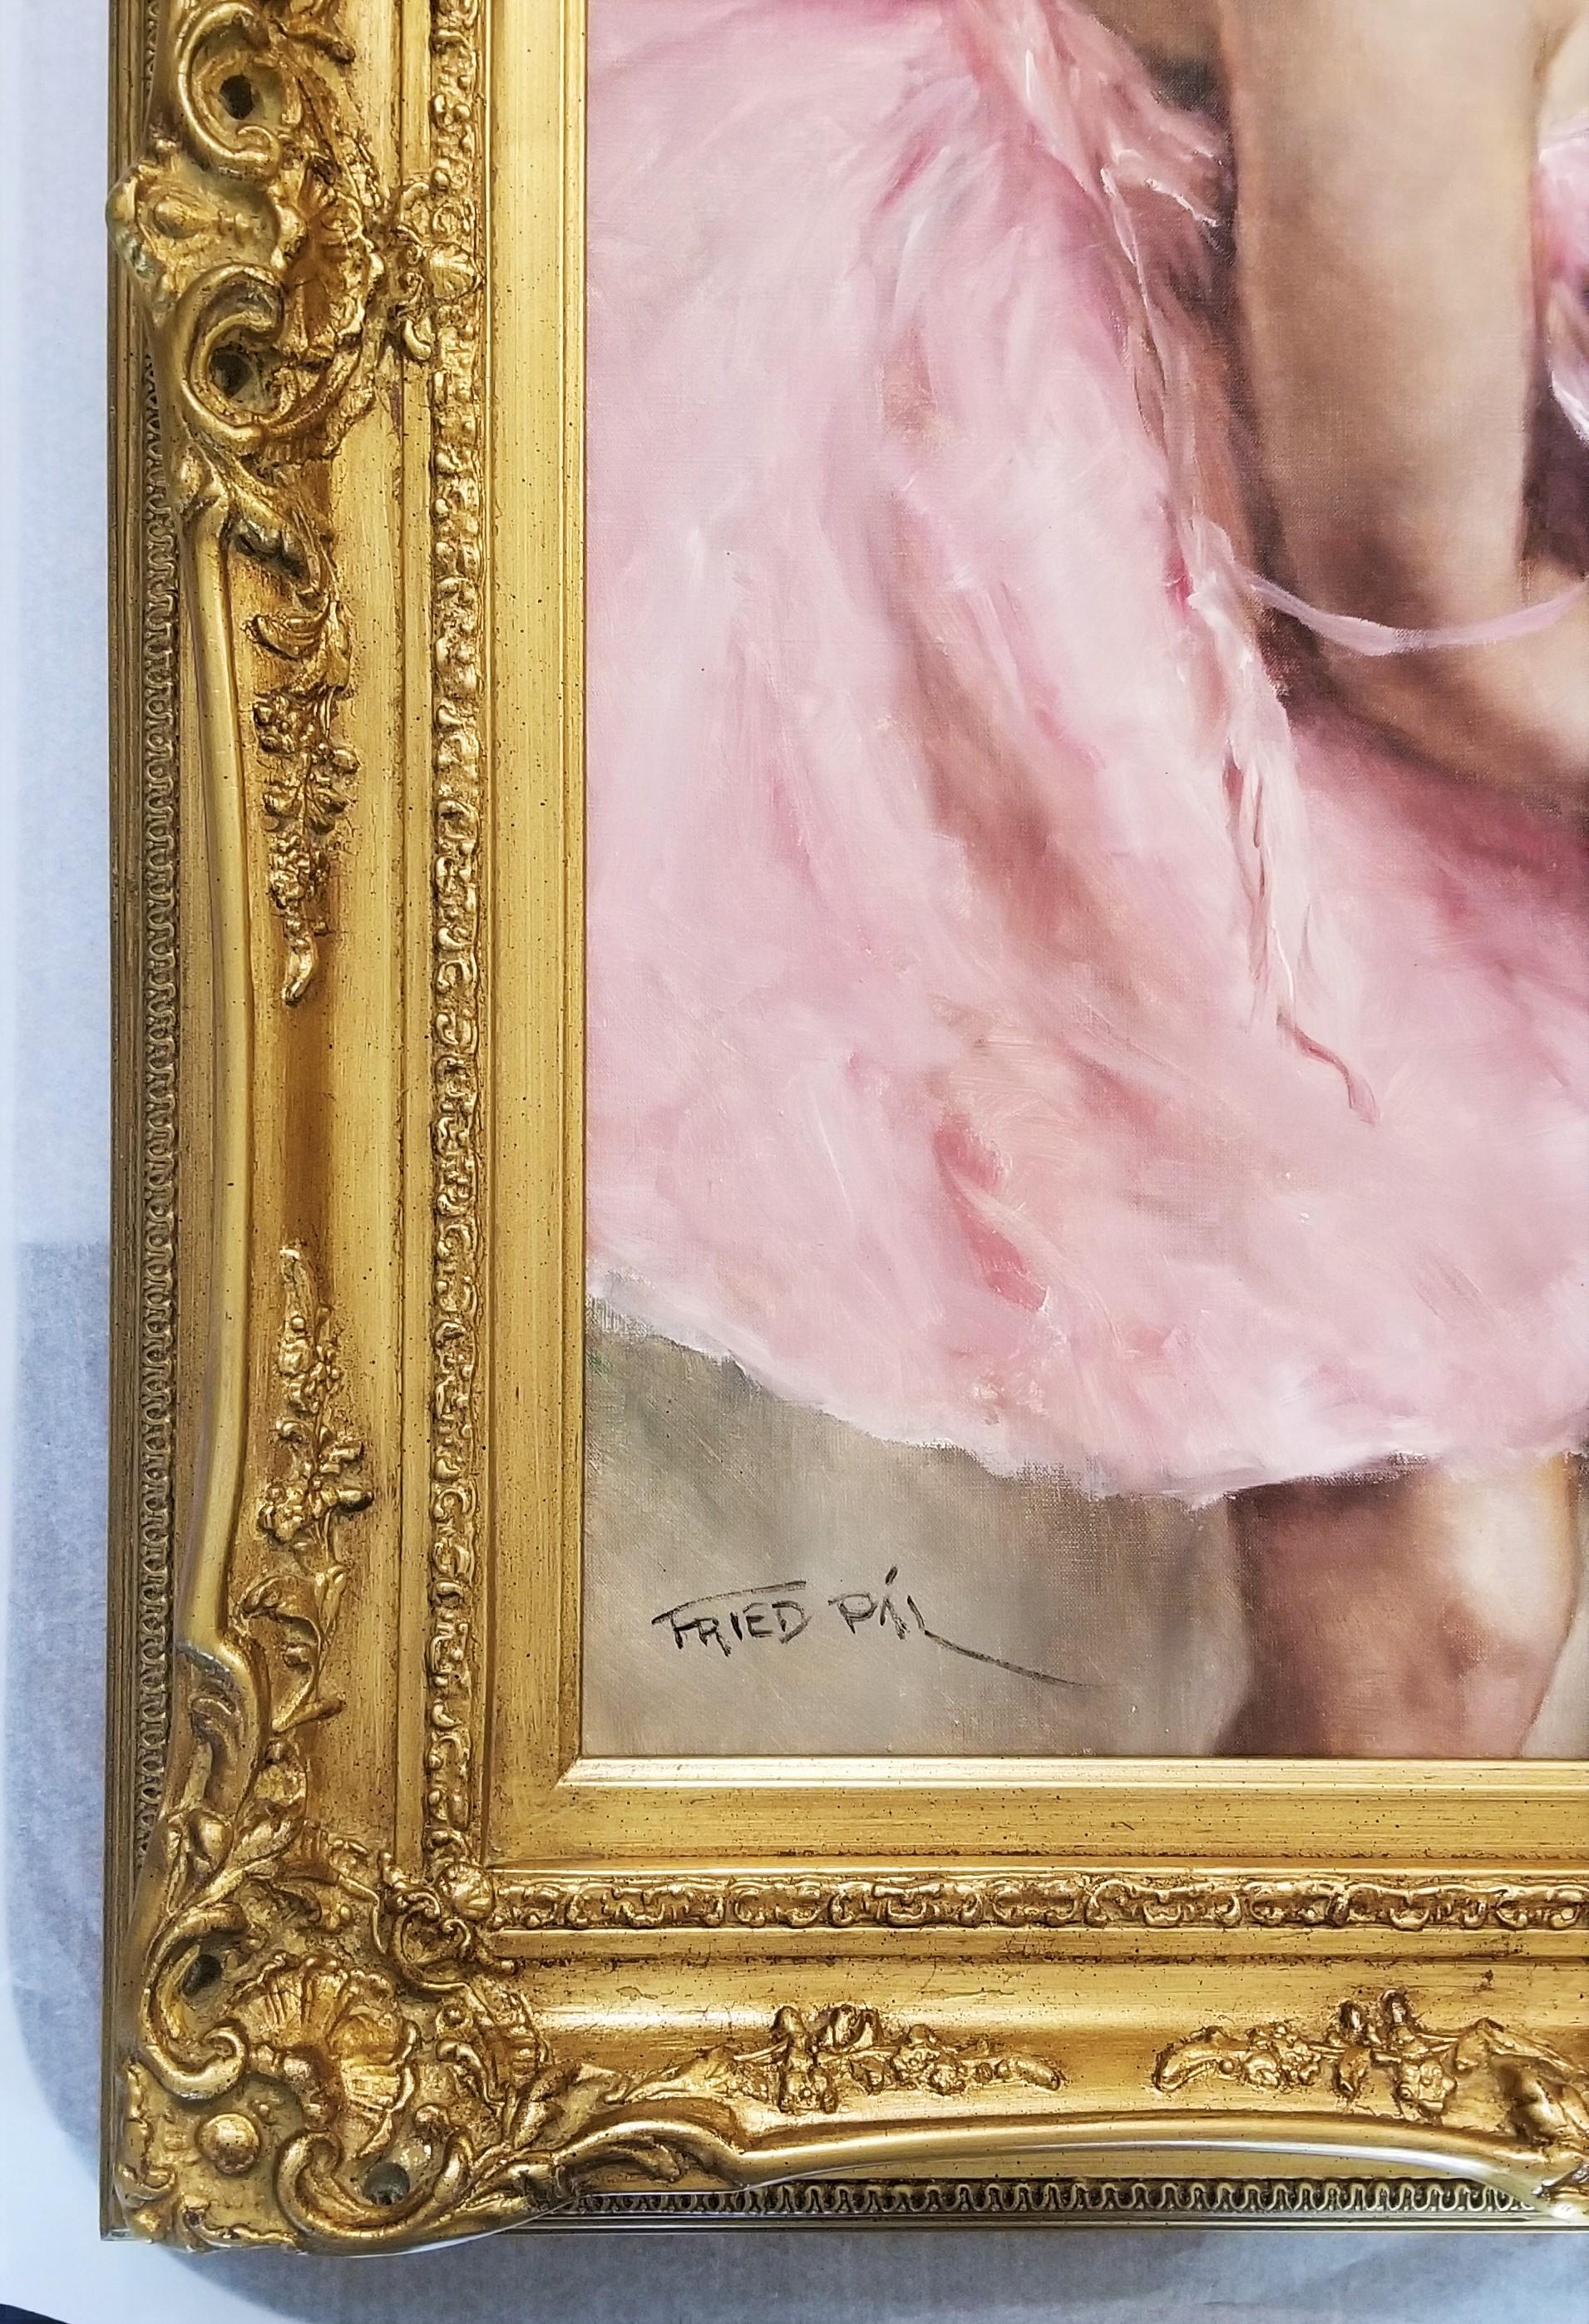 Intermission (Ballerina) /// Impressionismus Degas Französisches Ballett Renoir Figurative (Art déco), Painting, von Pal Fried